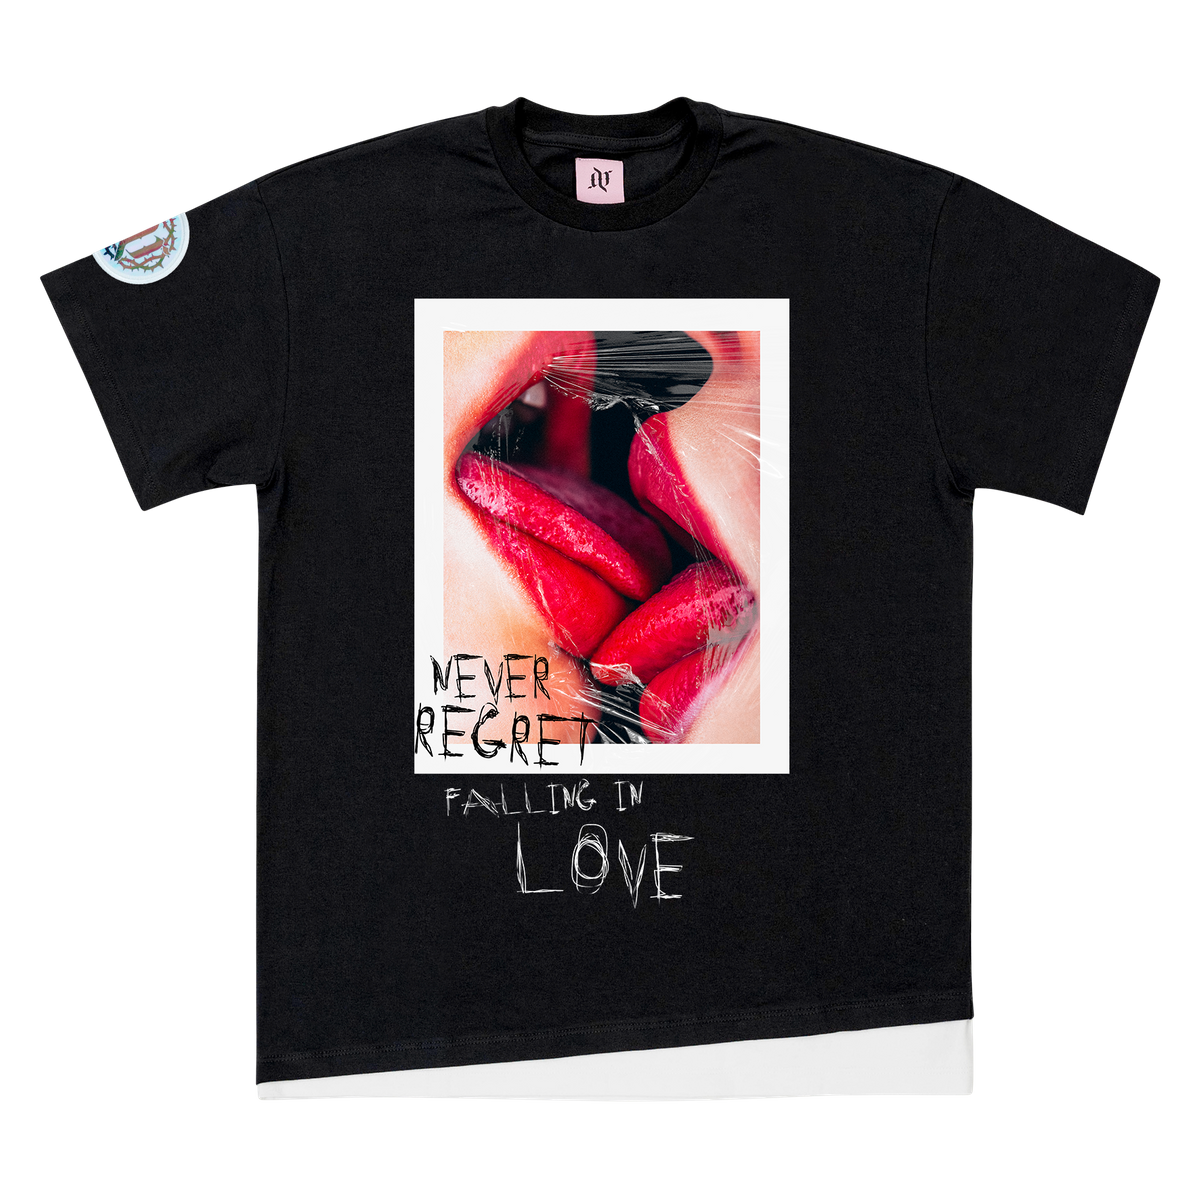 Regret Love - T-Shirt